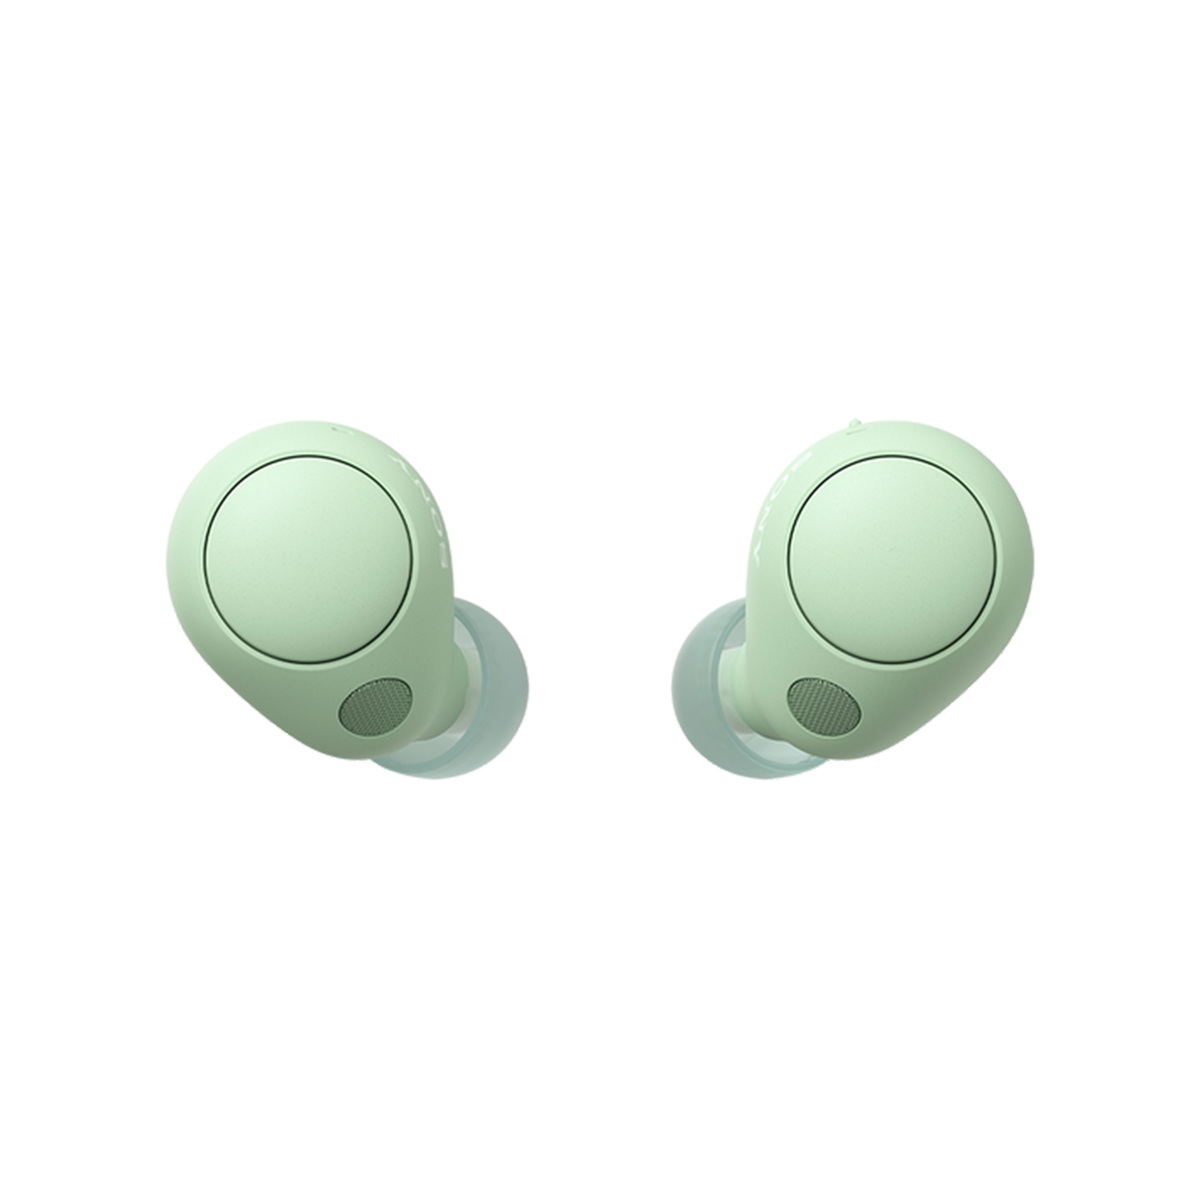 سوني سماعة أذن لاسلكية مع إلغاء الضوضاء، أخضر فاتح، WFC700